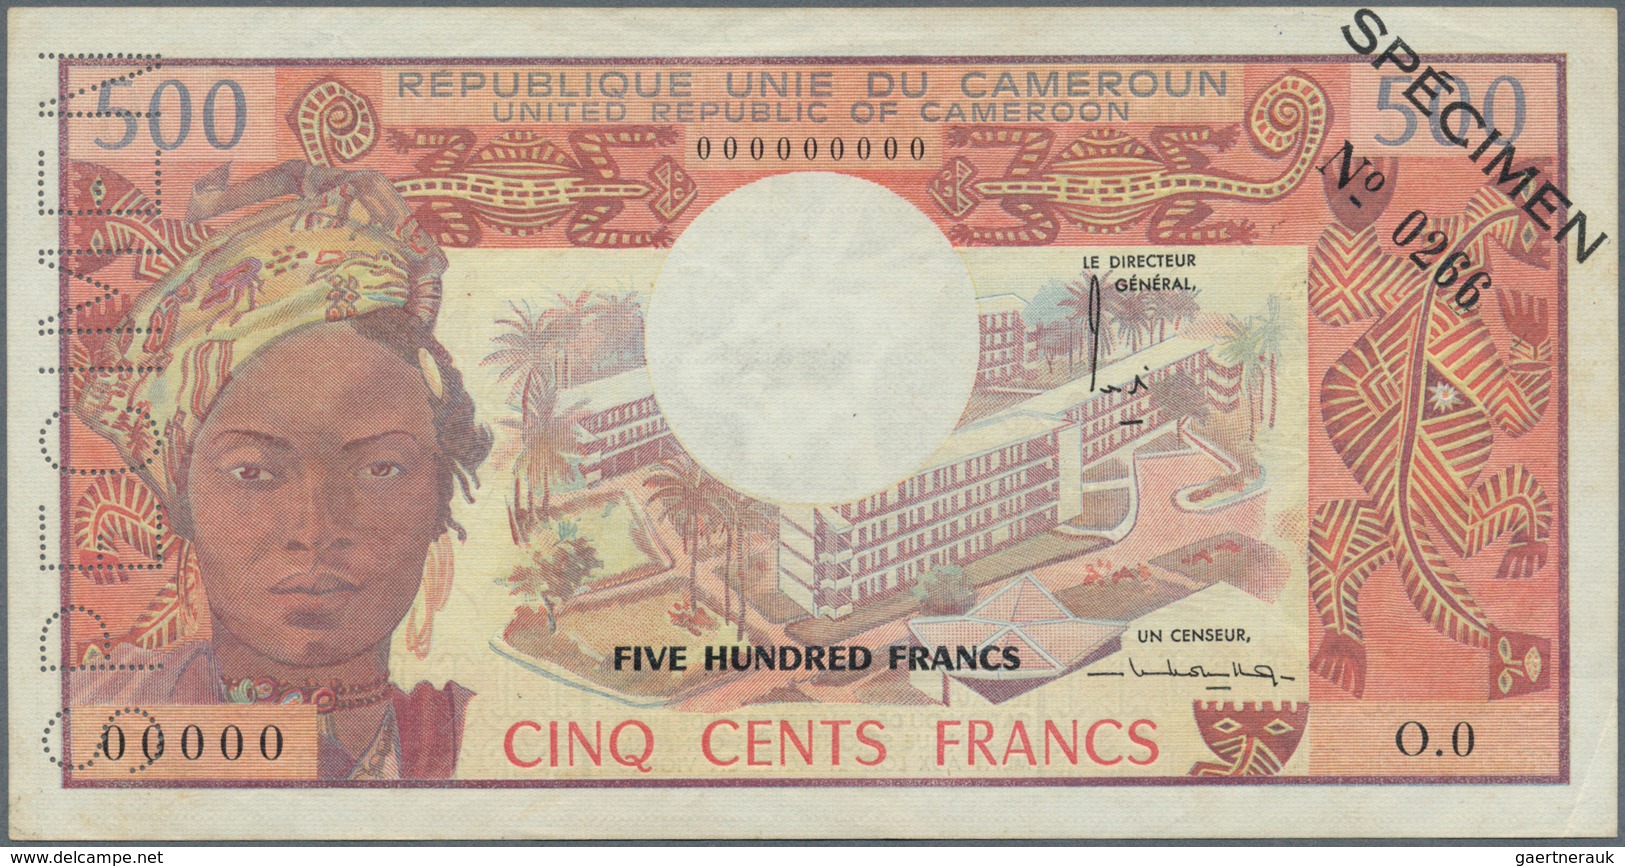 Cameroon / Kamerun: Banque Des États De L'Afrique Centrale - République Unie Du Cameroun 500 Francs - Kamerun